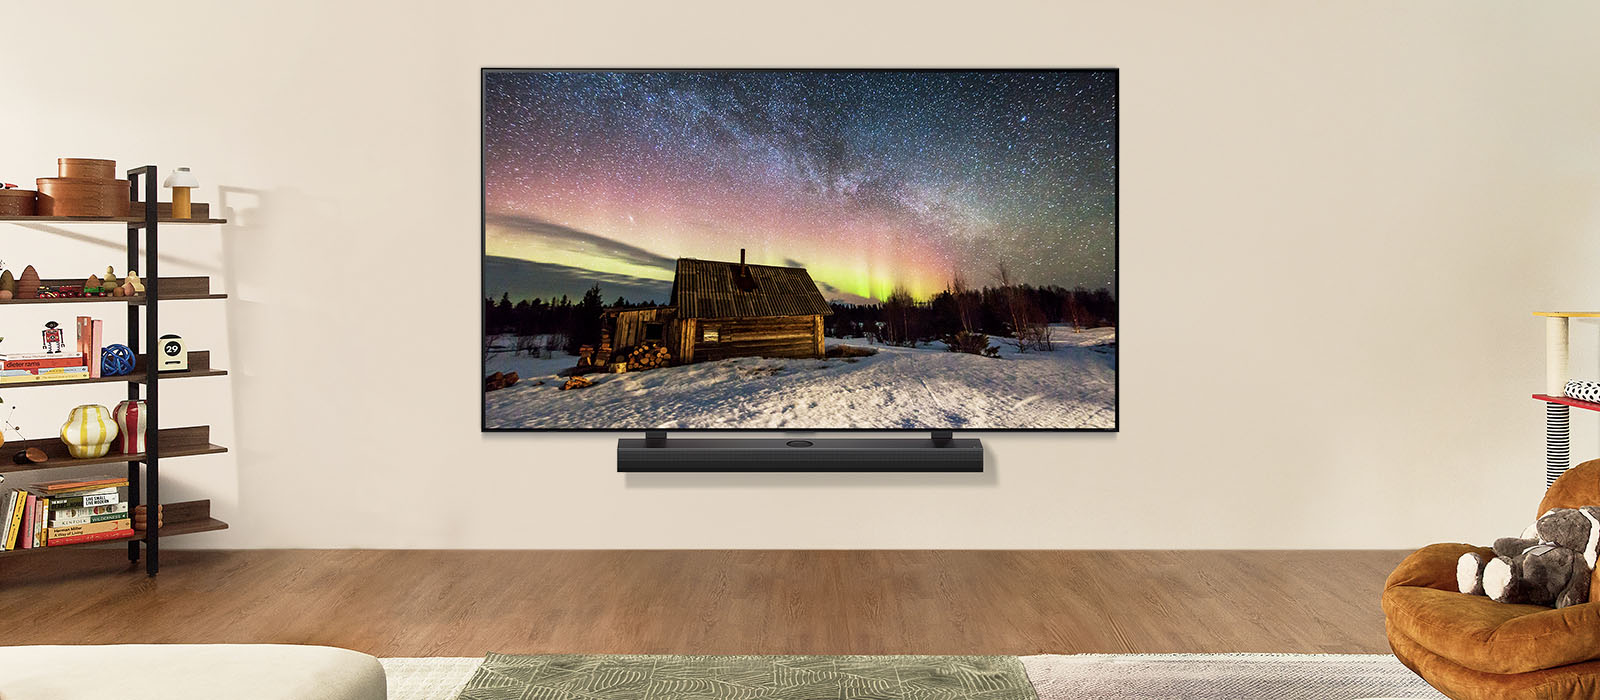 TV LG và Loa thanh LG trong không gian sống hiện đại vào ban ngày. Hình ảnh màn hình cực quang được hiển thị với mức độ sáng lý tưởng.